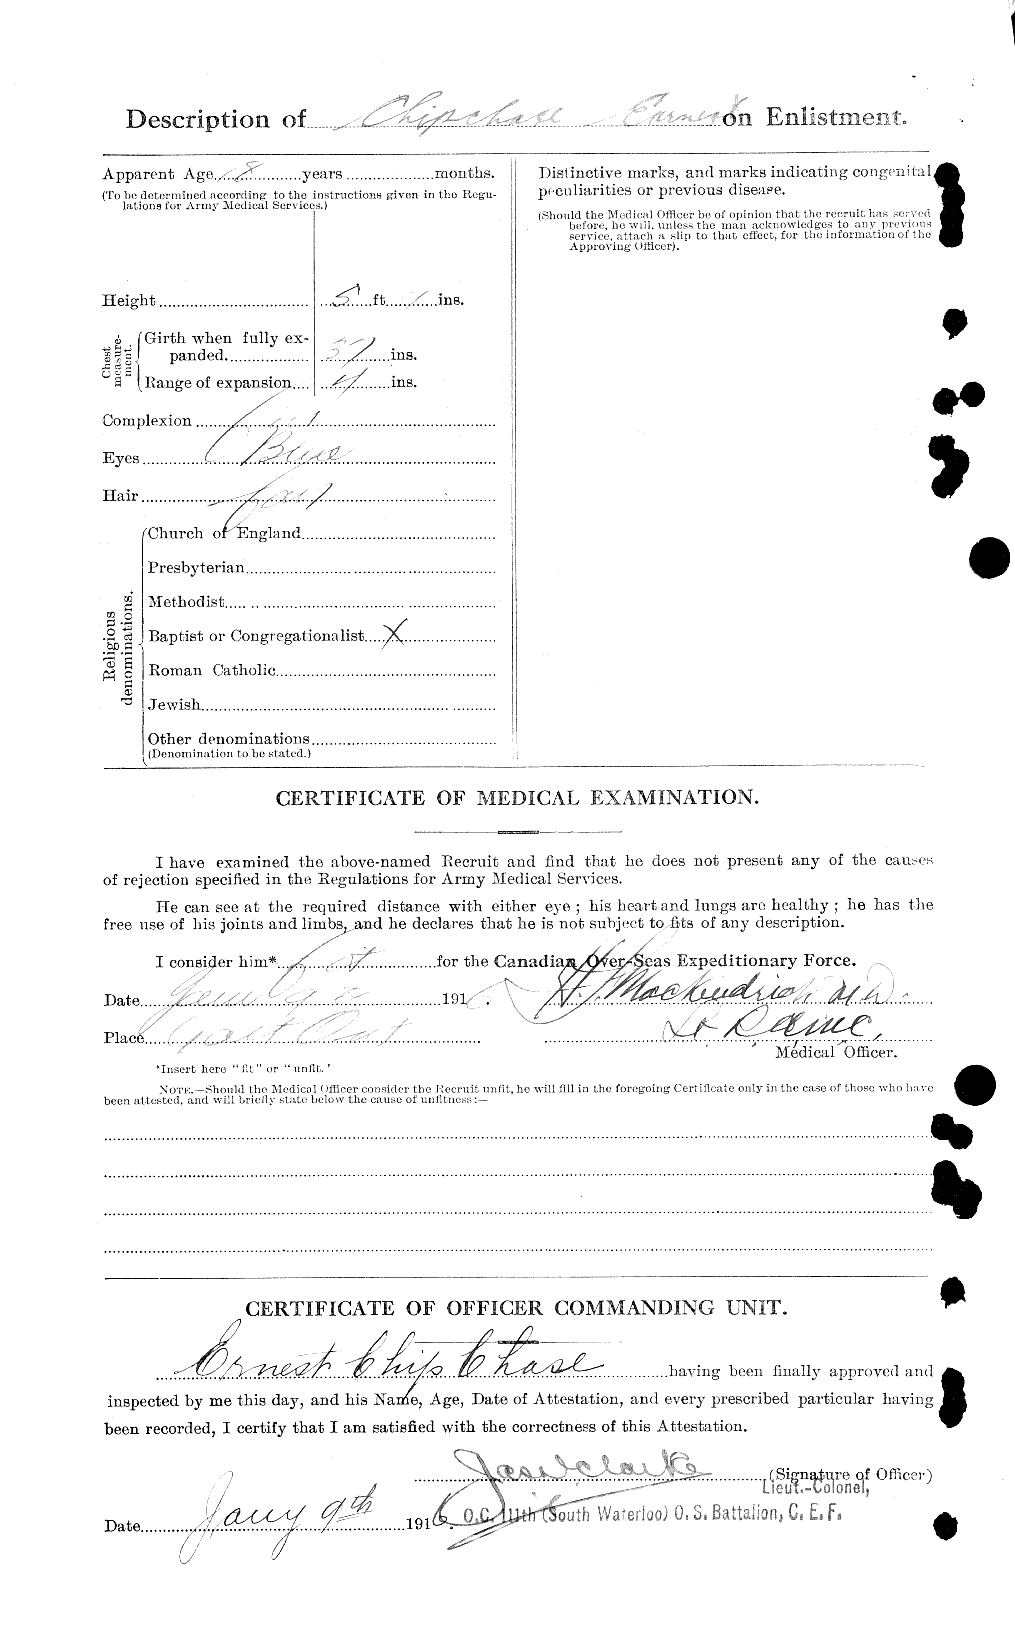 Dossiers du Personnel de la Première Guerre mondiale - CEC 014620b